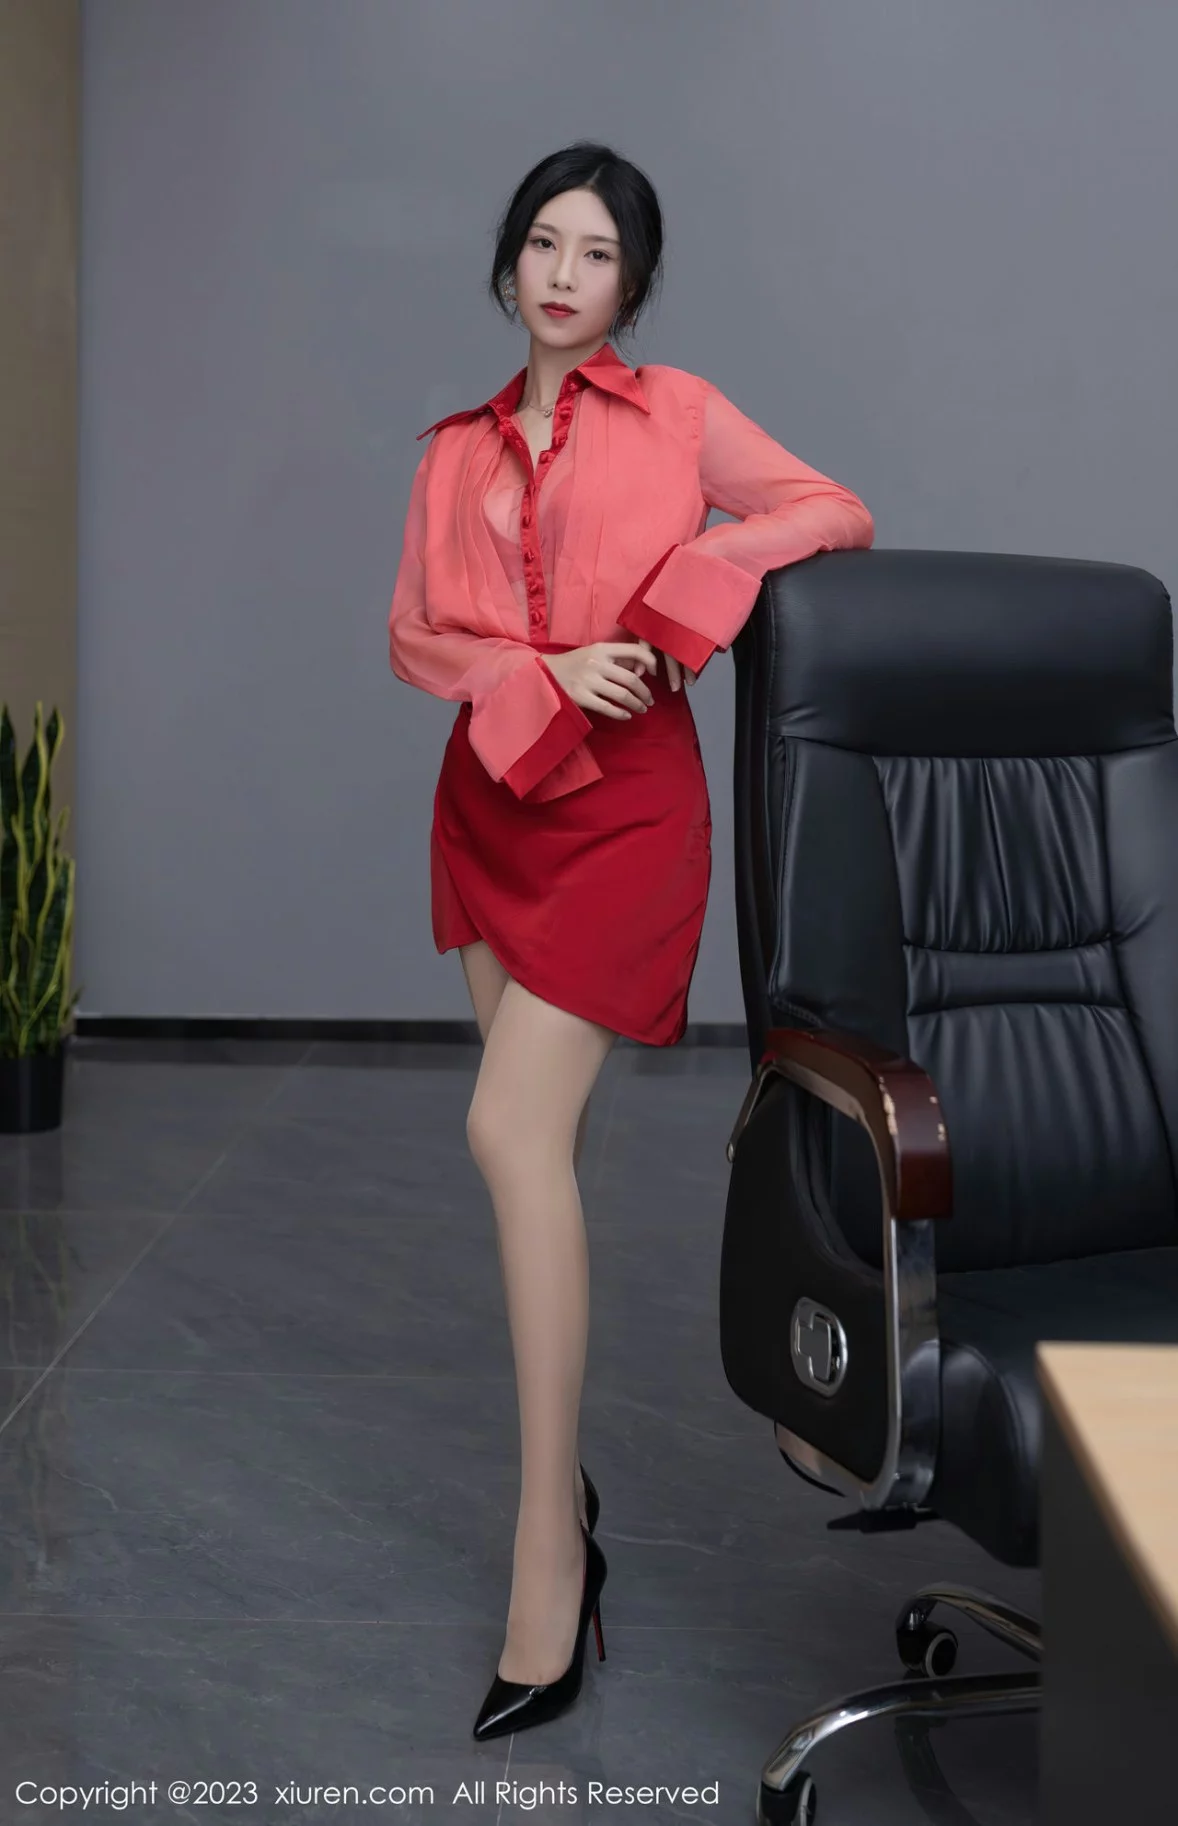 [XiuRen秀人网]第6189期_模特利世女老板角色红色薄透上衣配红短裙露红色内衣诱惑写真73P